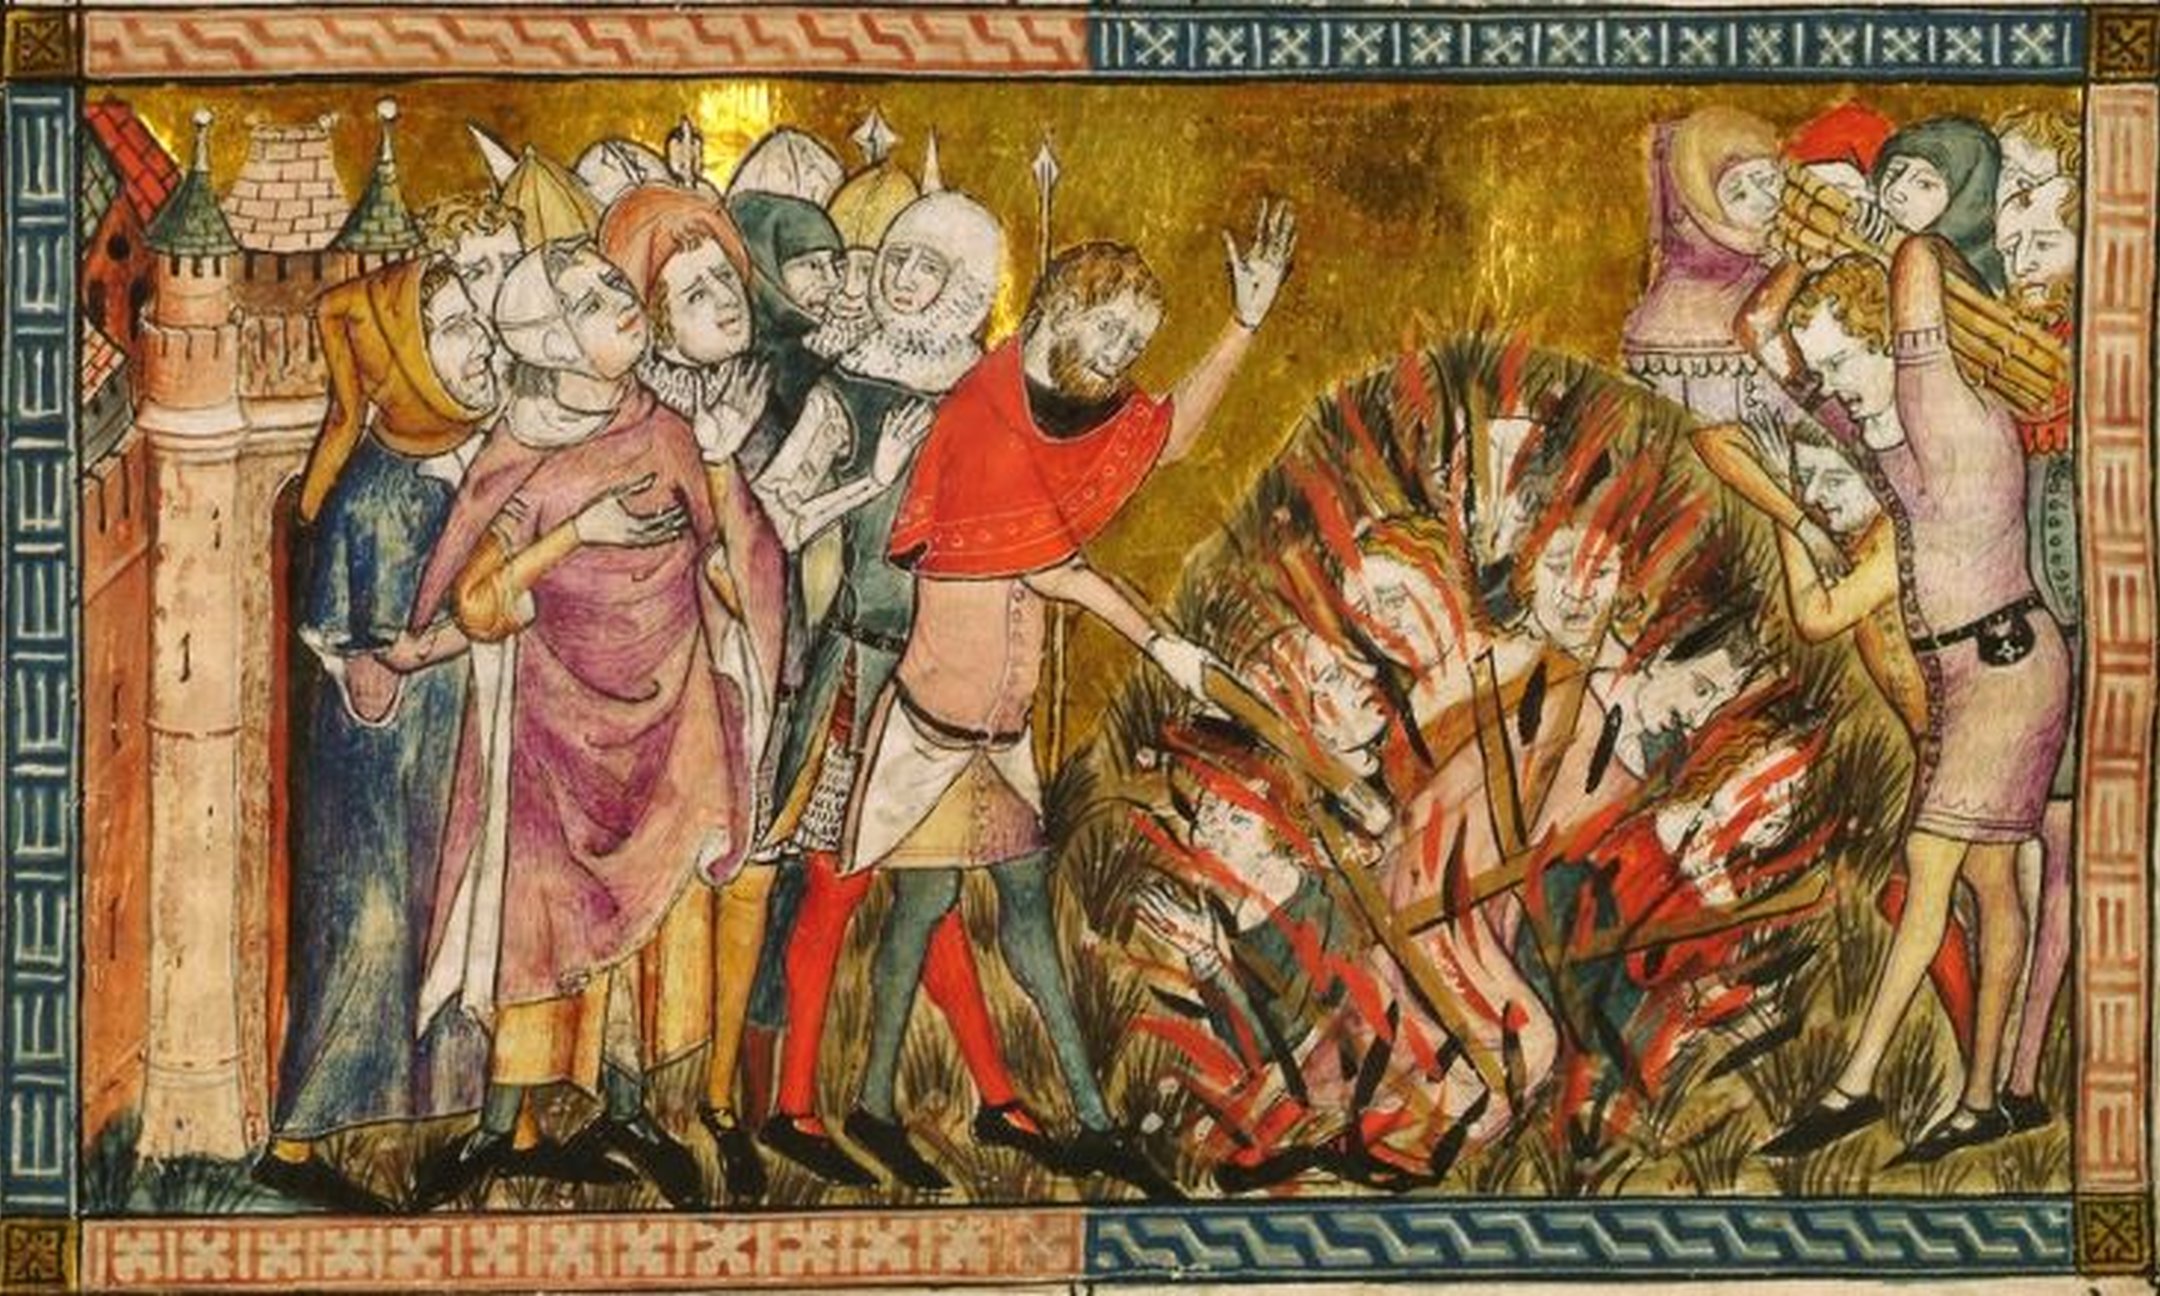 Illustratie van Jodenverbranding (ca. 1353). Joden kregen de schuld van de pestepidemie in Europa. Ze werden ervan beschuldigd waterbronnen te vergiftigen.